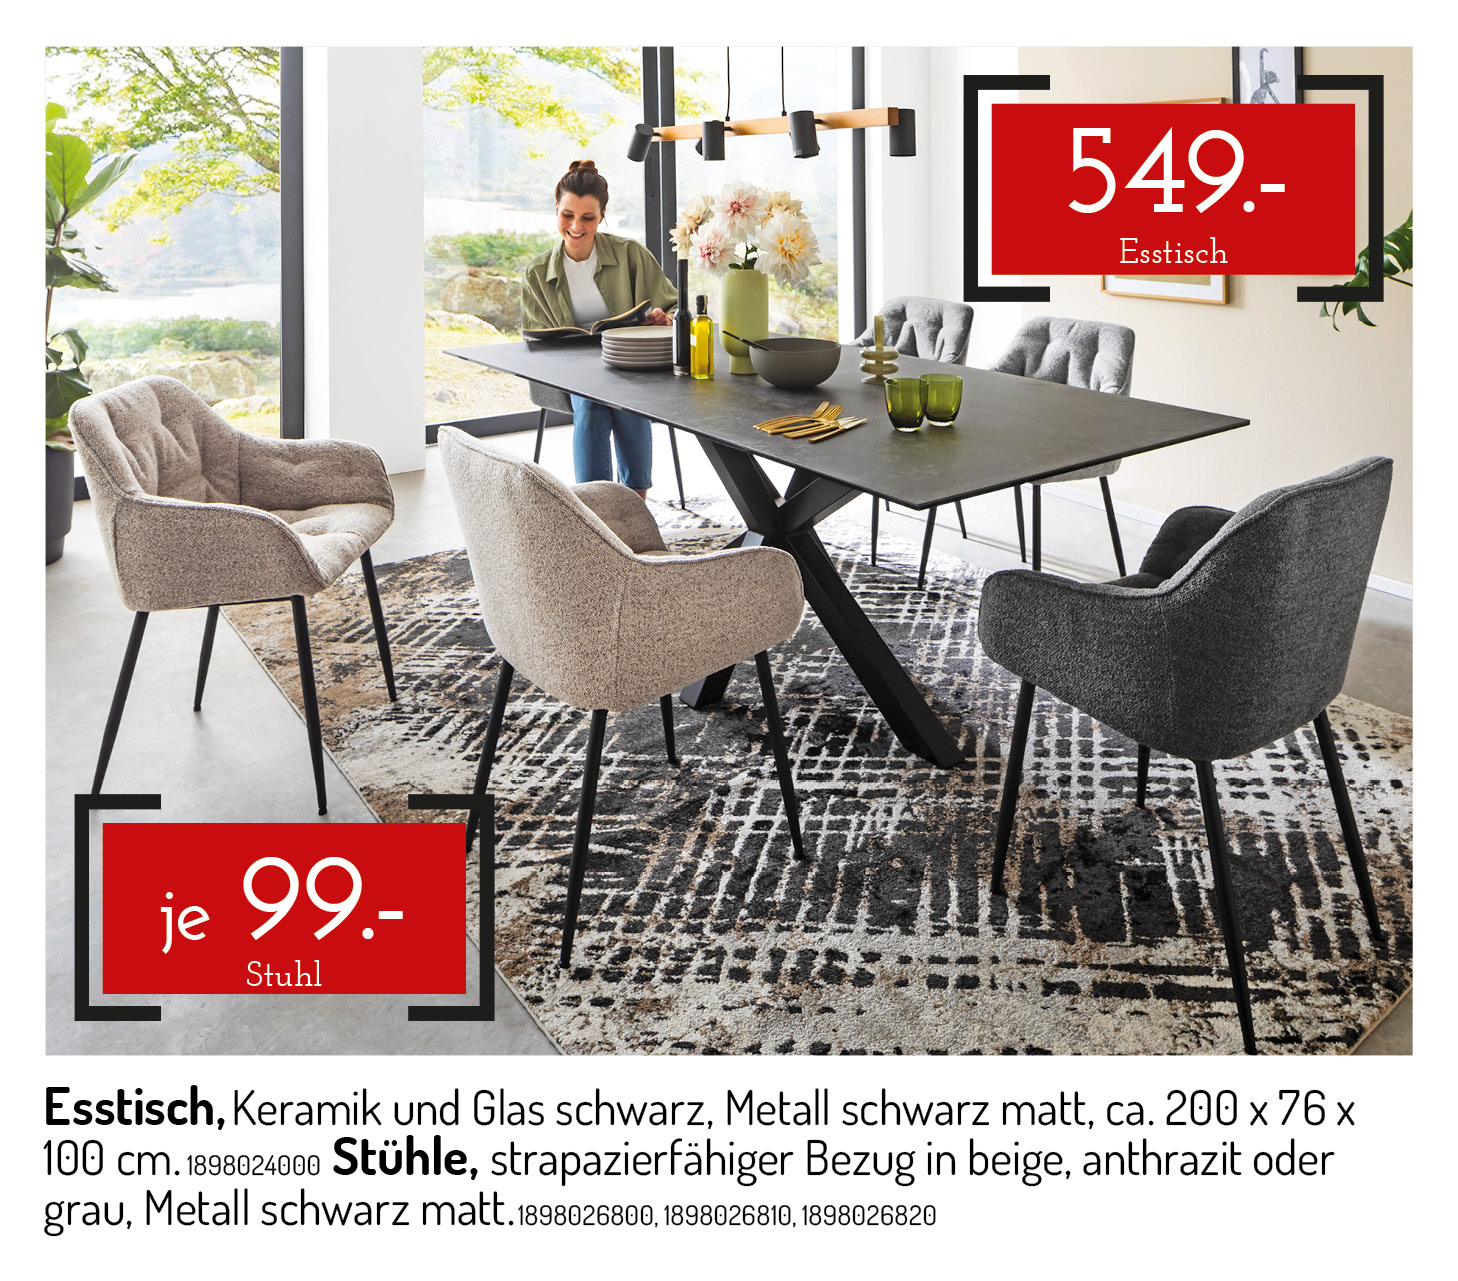 Schöner Esstisch in Keramik und Glas schwarz in 200 x 76 x 100 cm mit tollen Stühlen in verschiedenen Farben!